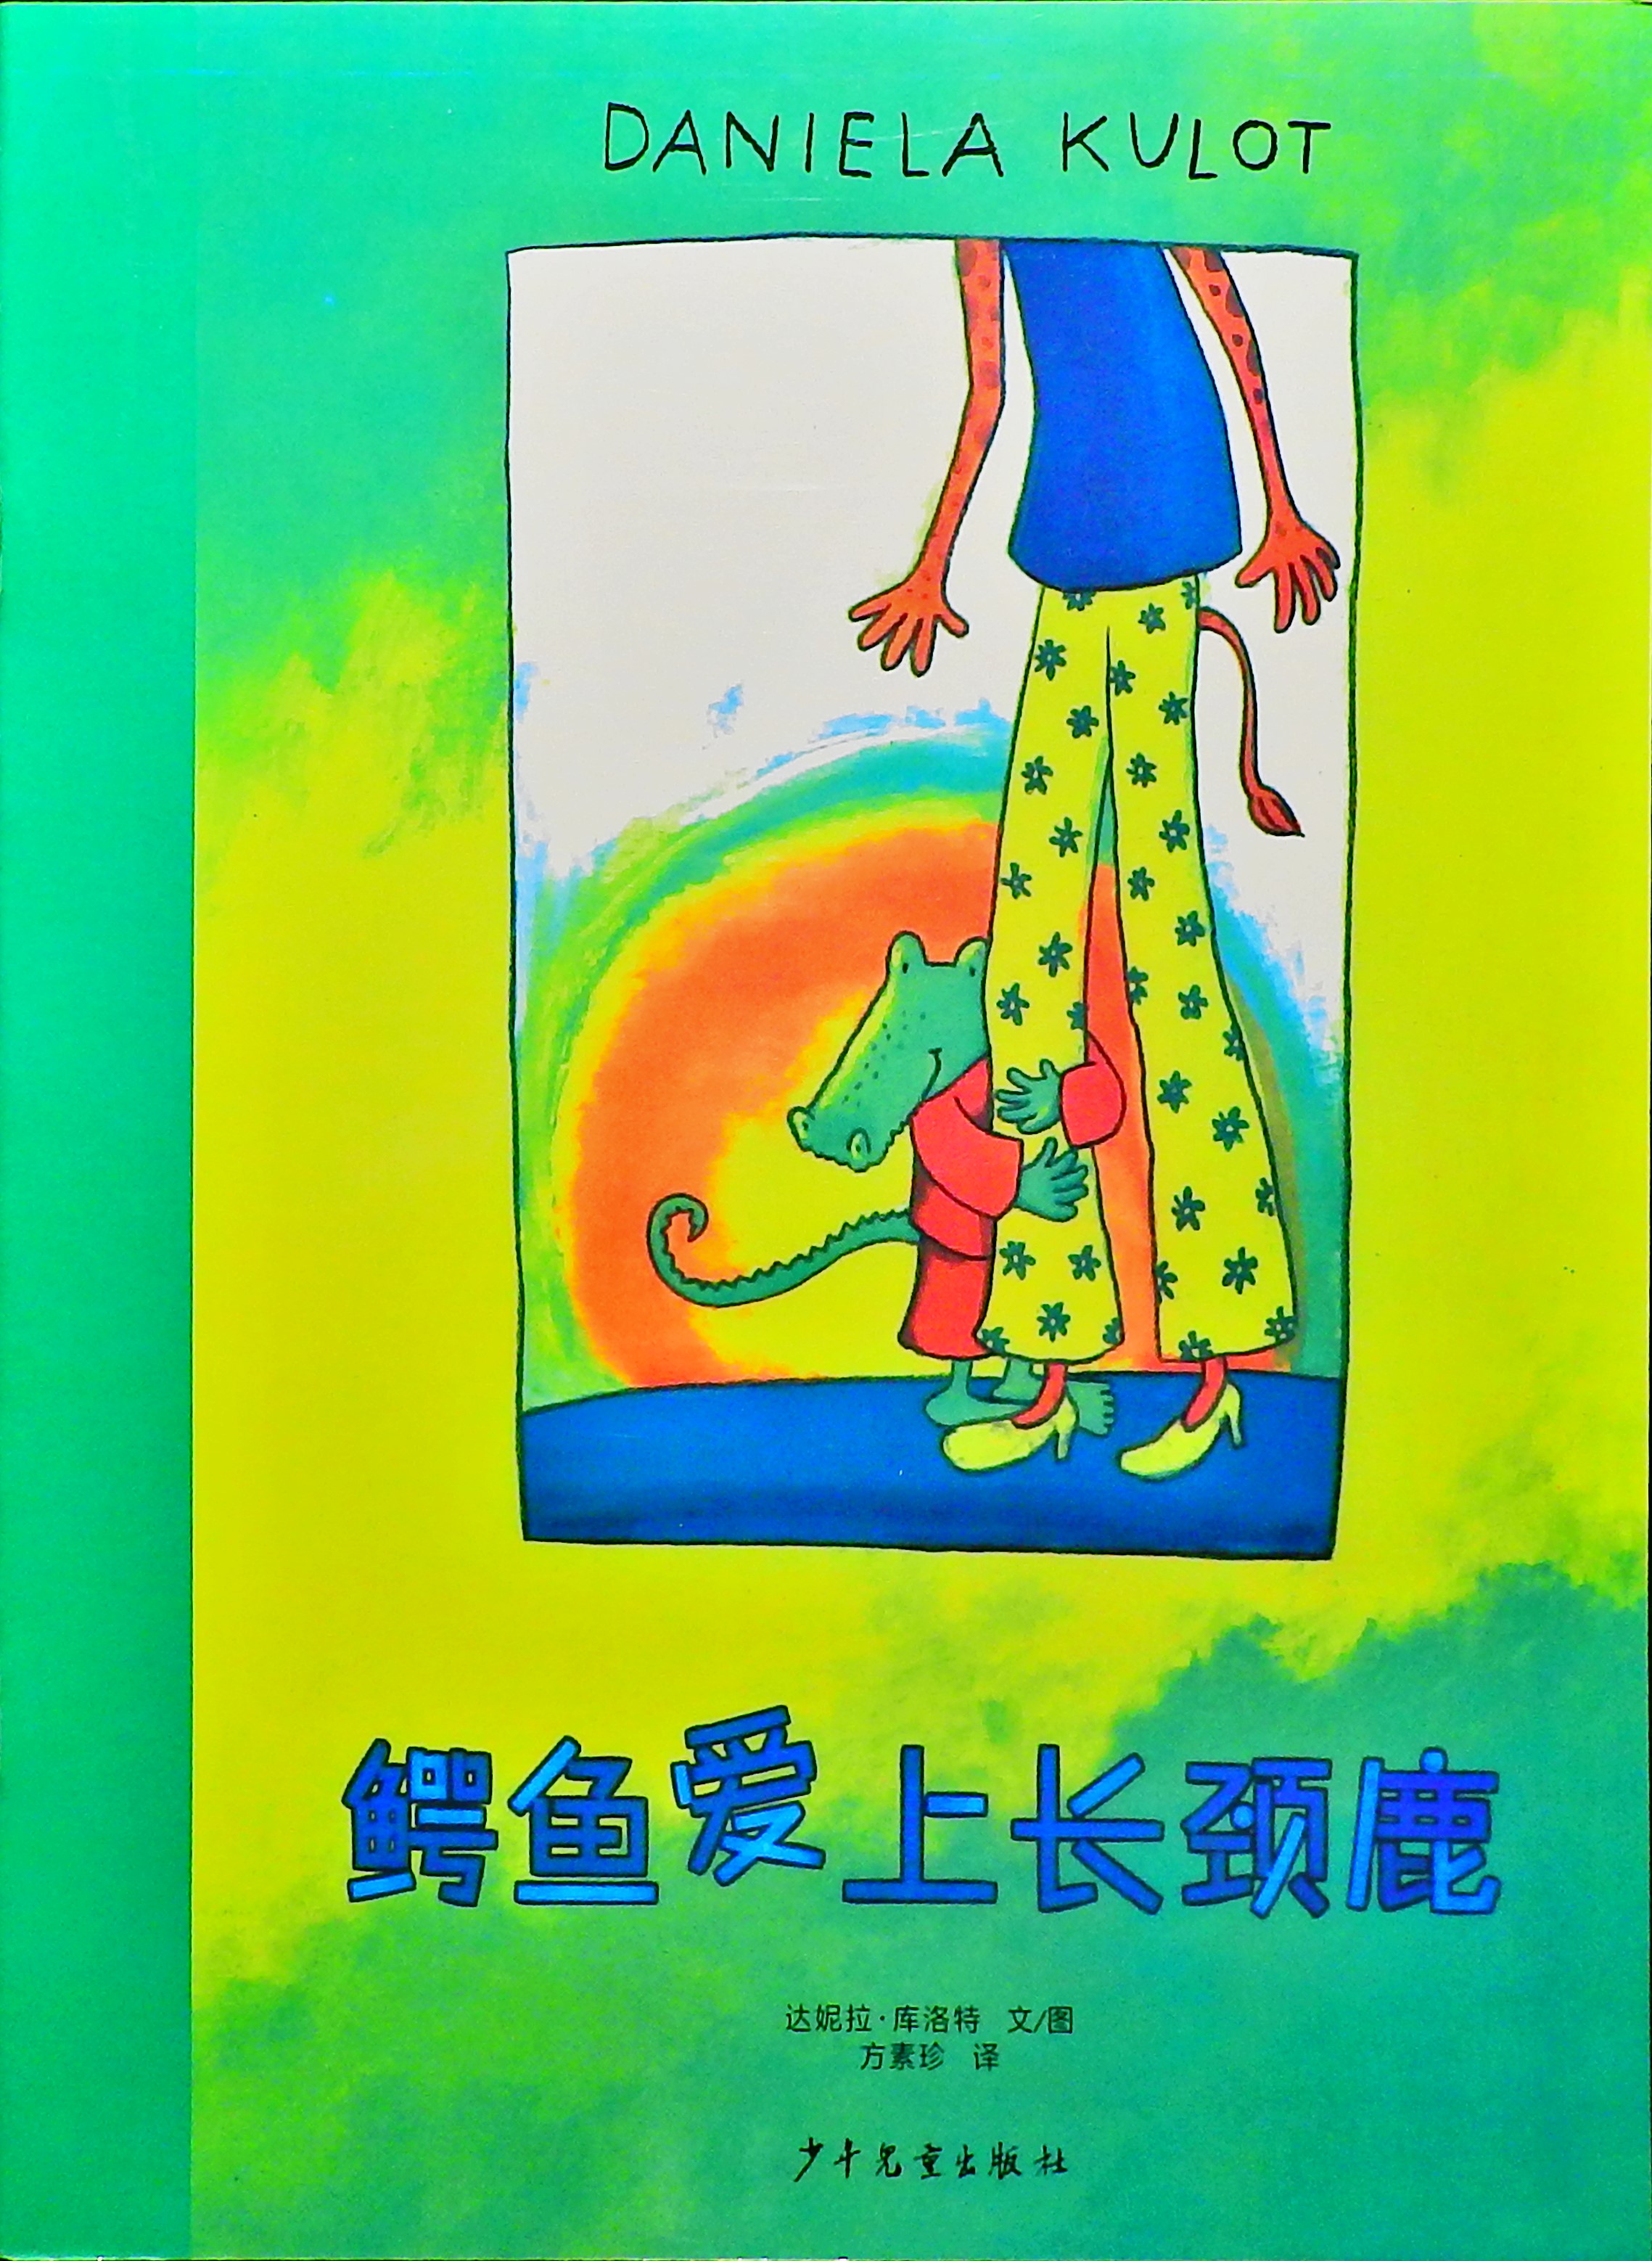 鳄鱼爱上长颈鹿 (01),绘本,绘本故事,绘本阅读,故事书,童书,图画书,课外阅读